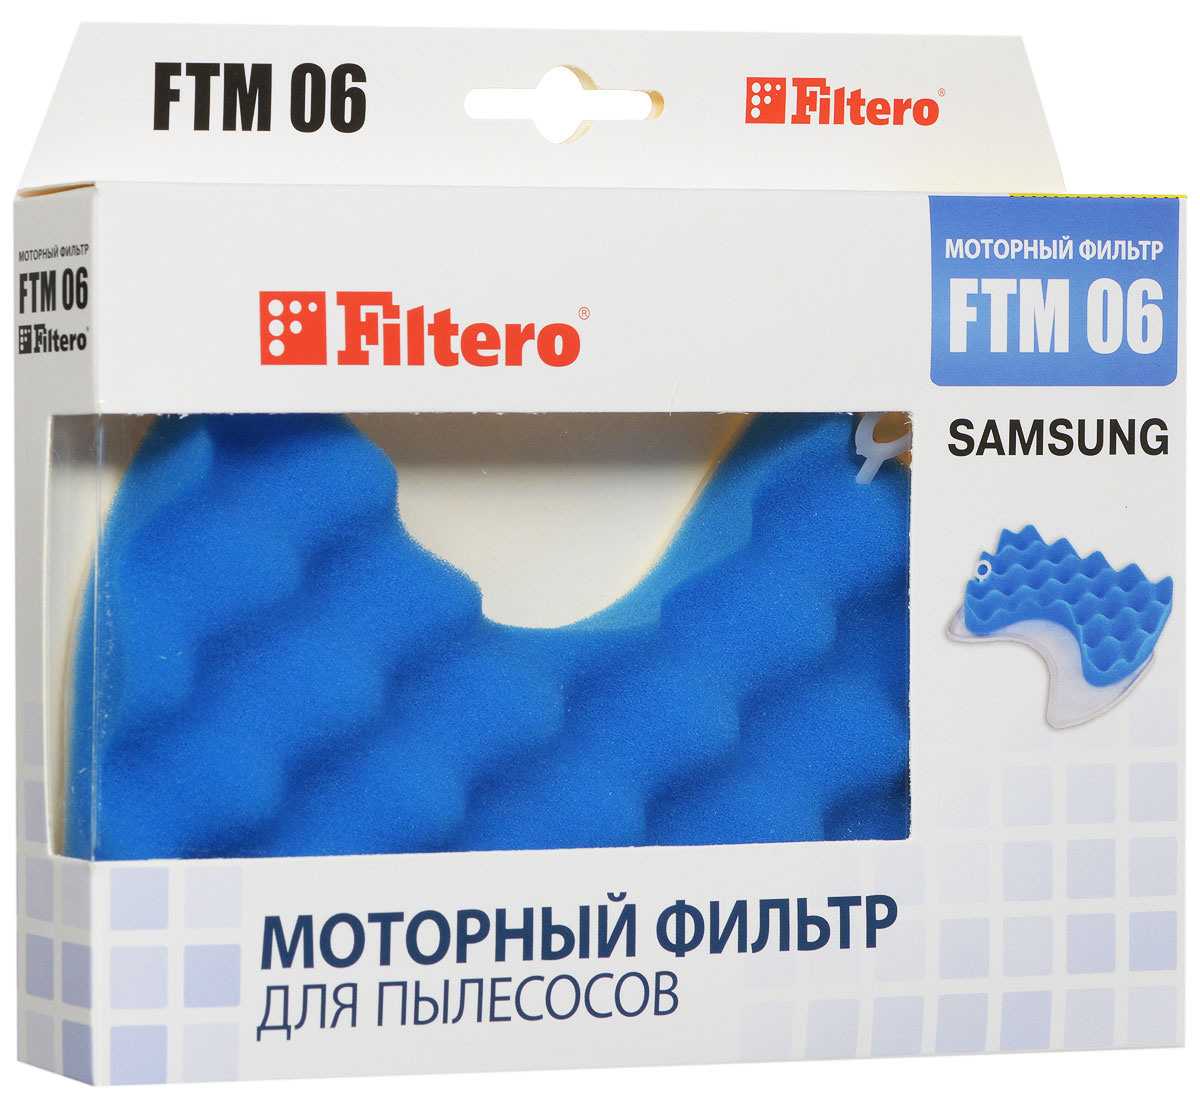 Filtero FTM 06 SAM комплект моторных фильтров для Samsung